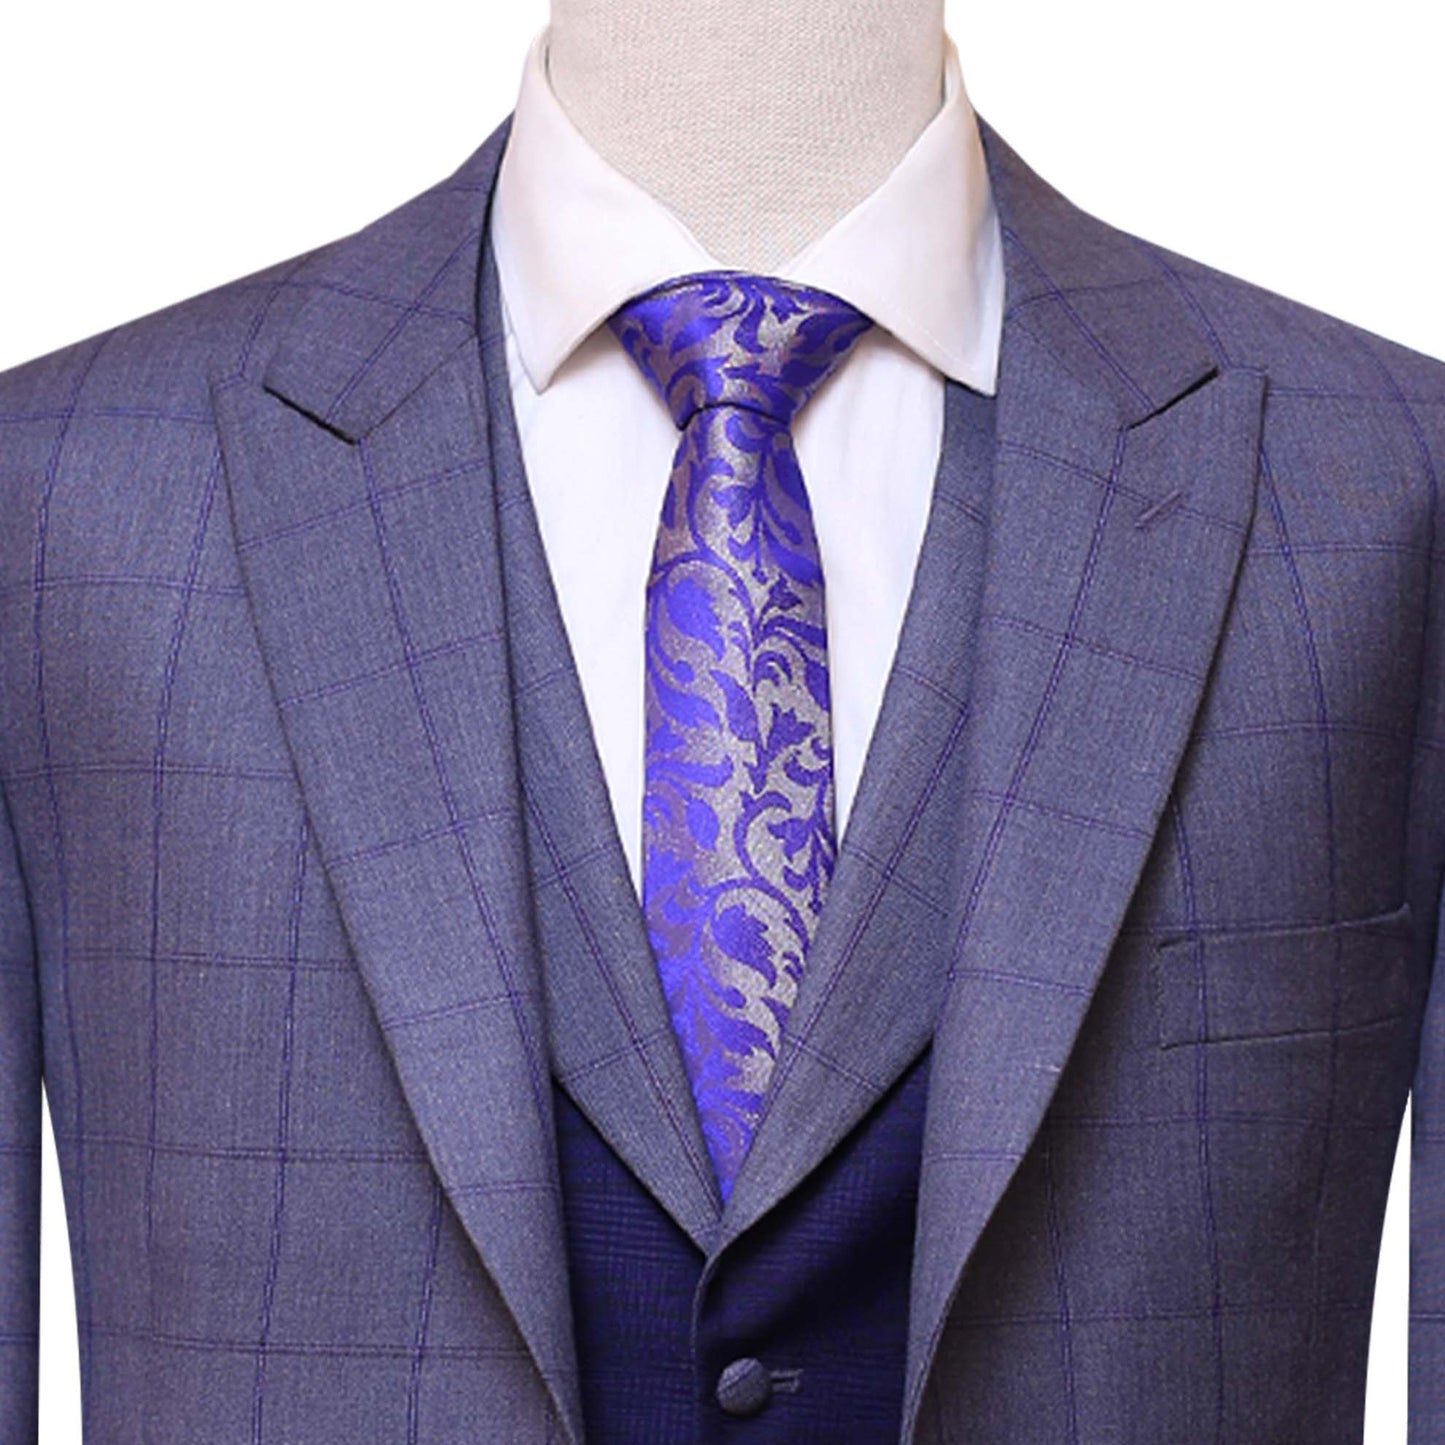 
                  
                    Windowpane Checkered Bespoke Gray 3 Piece Suit
                  
                